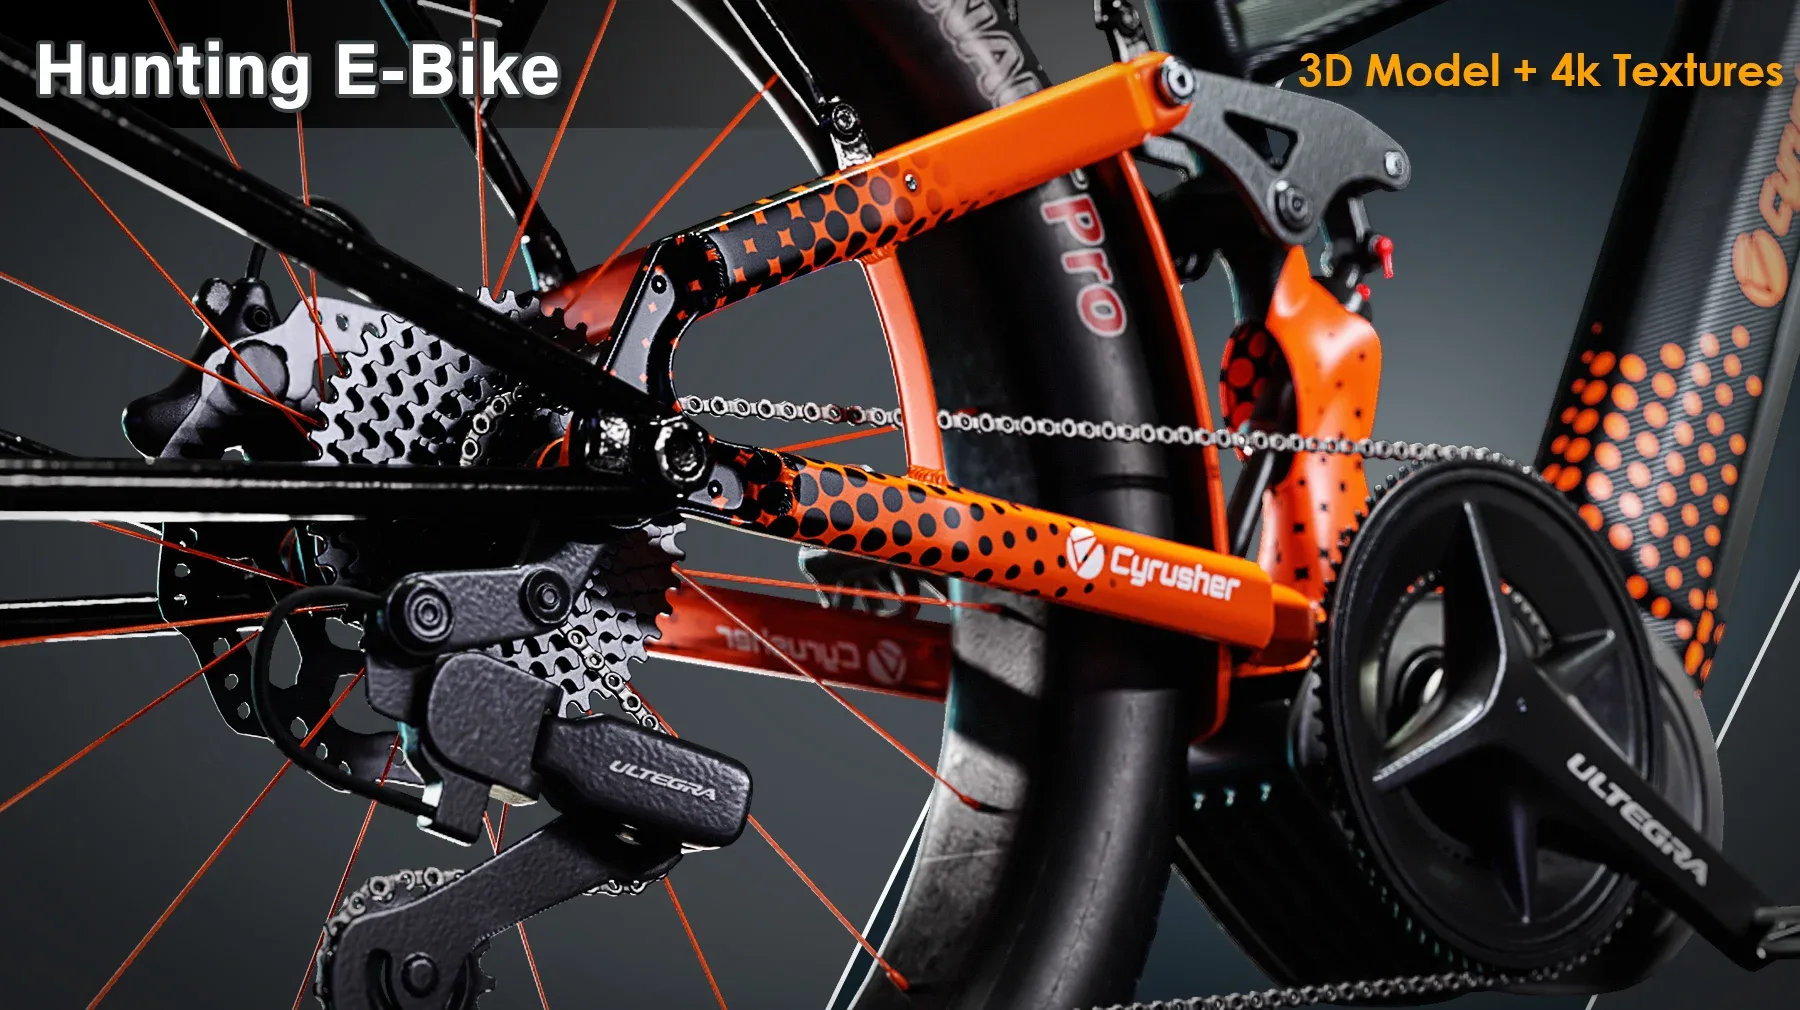 Hunting E-Bike / 3D Model + 4K Textures